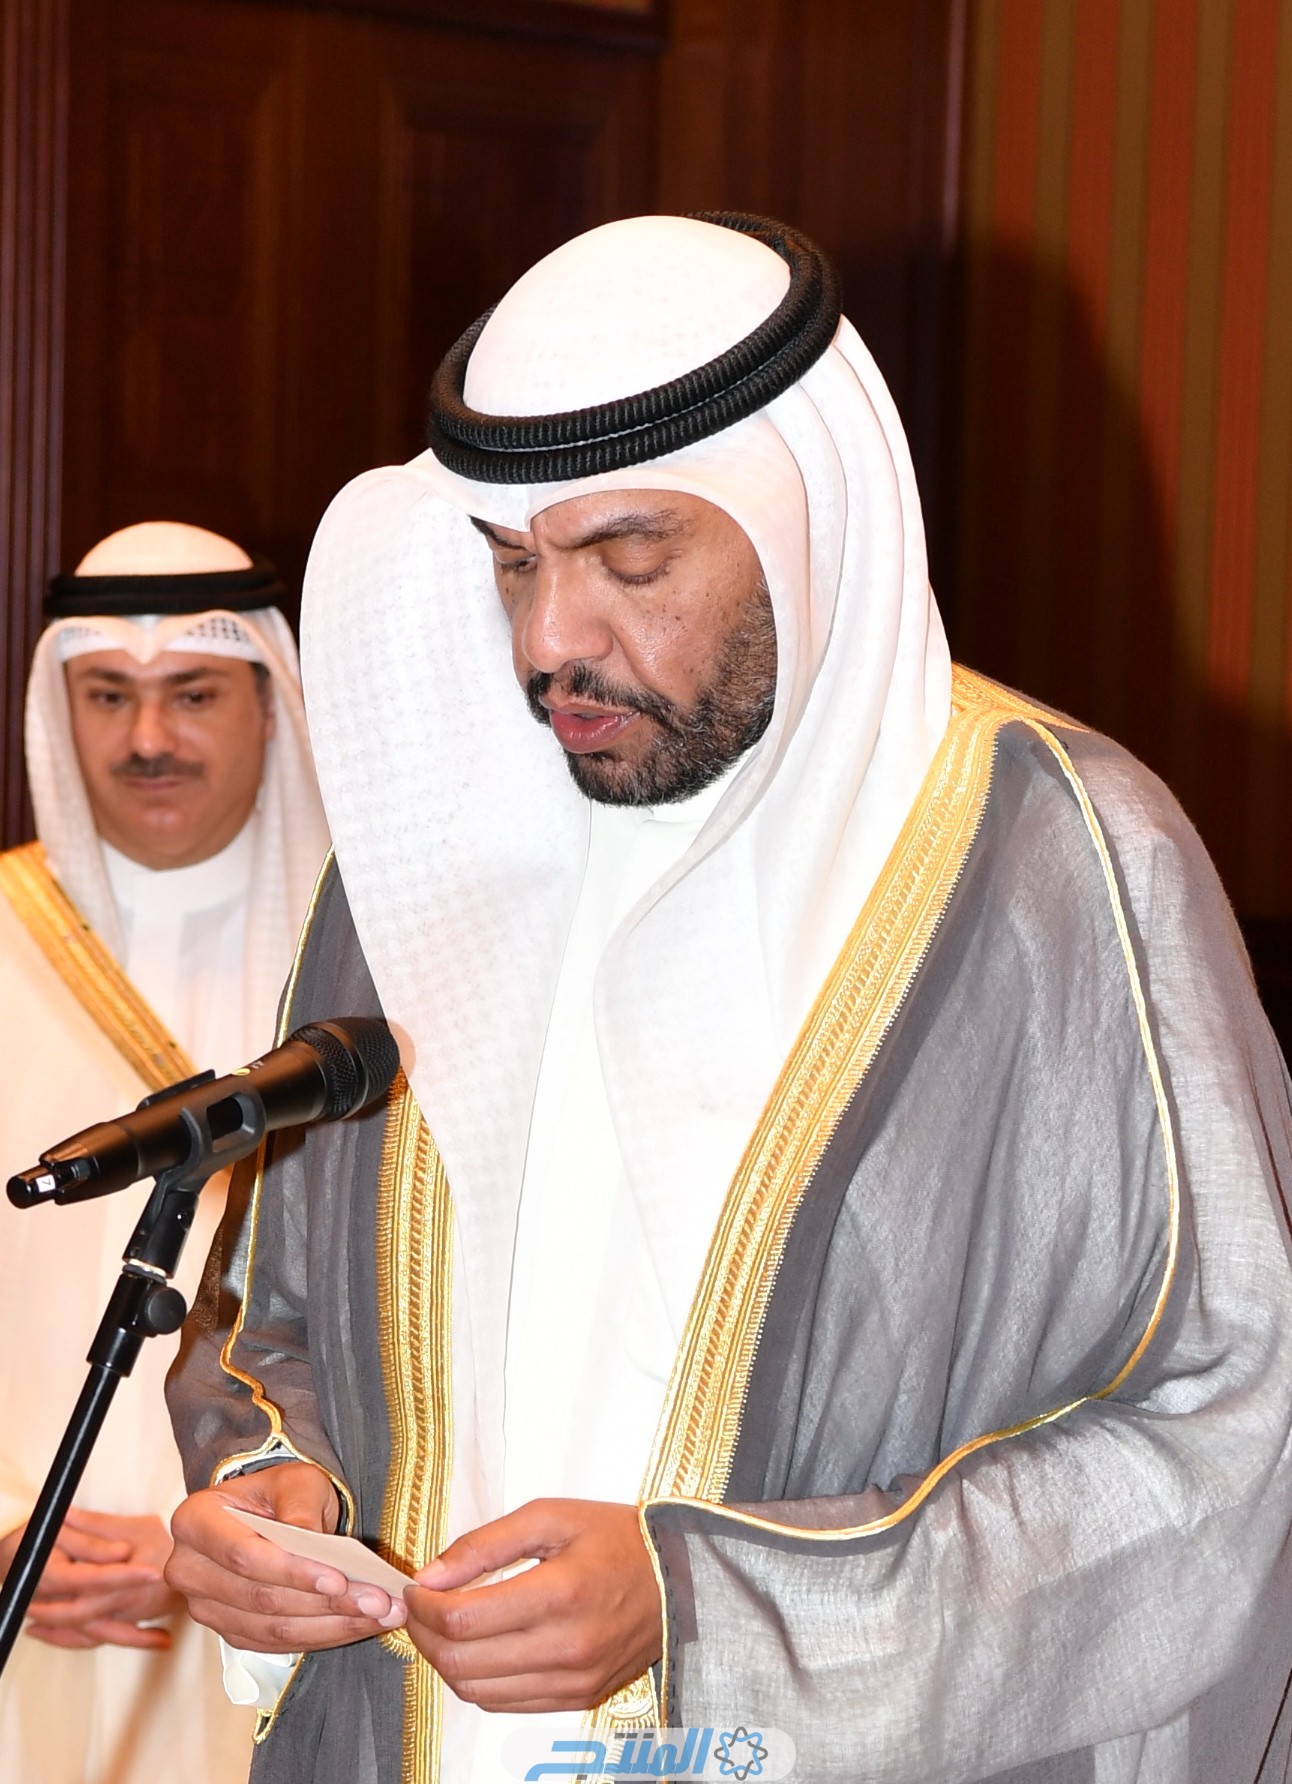 عبدالله علي عبدالله اليحيا ويكيبيديا؛. من هو وزير الخارجية الجديد في الكويت